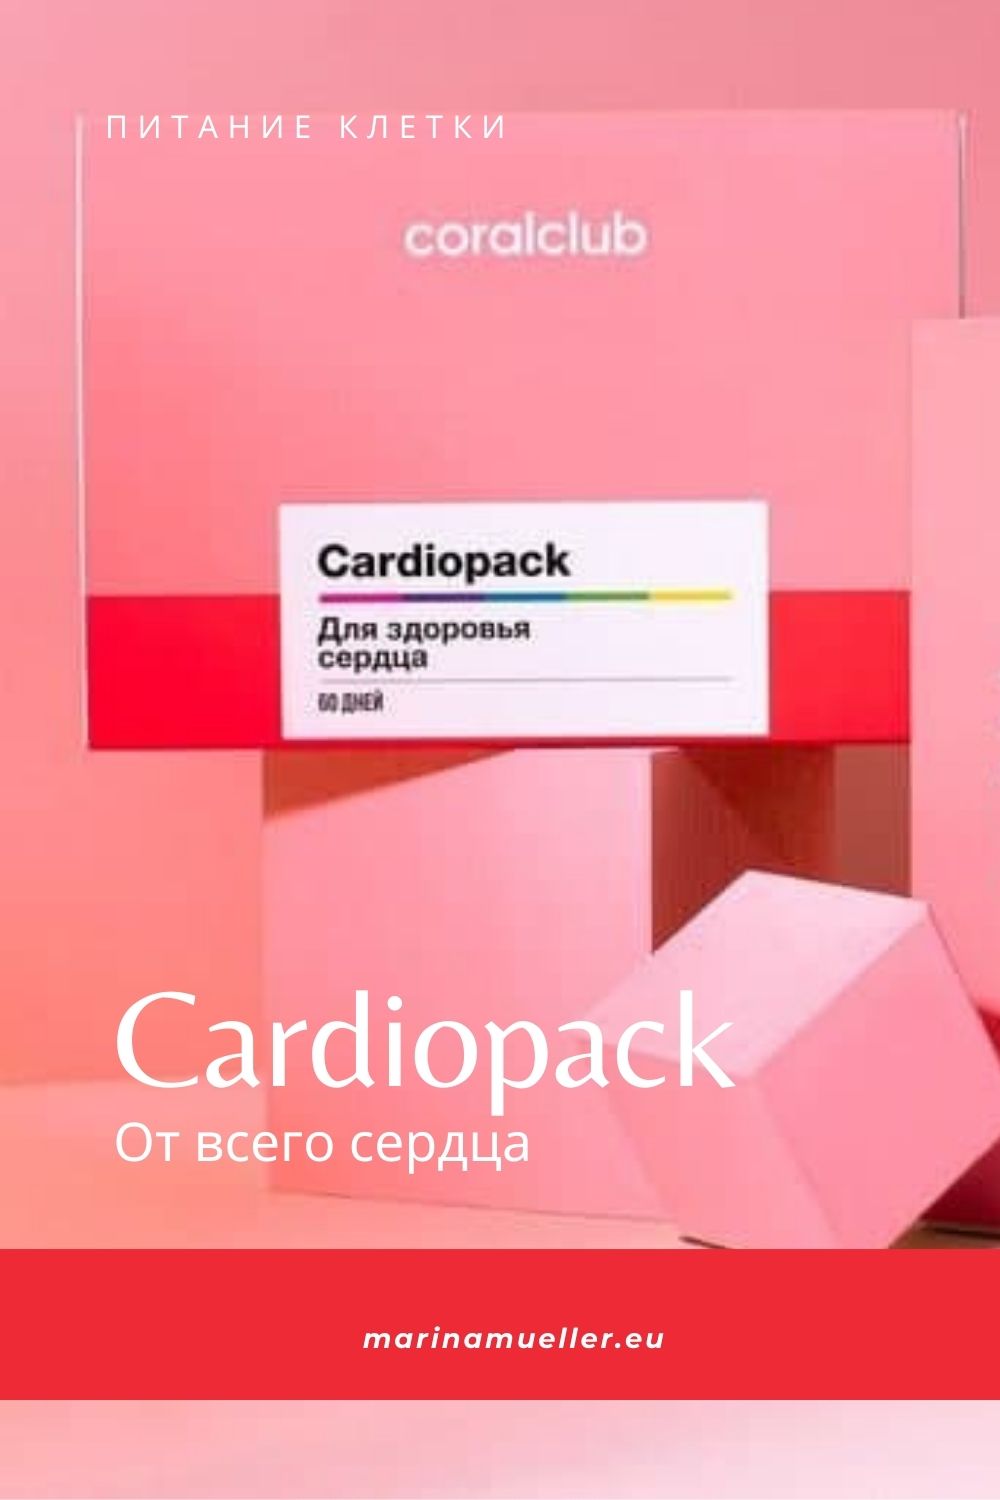 Как сохранить здоровье сердца CardioPack